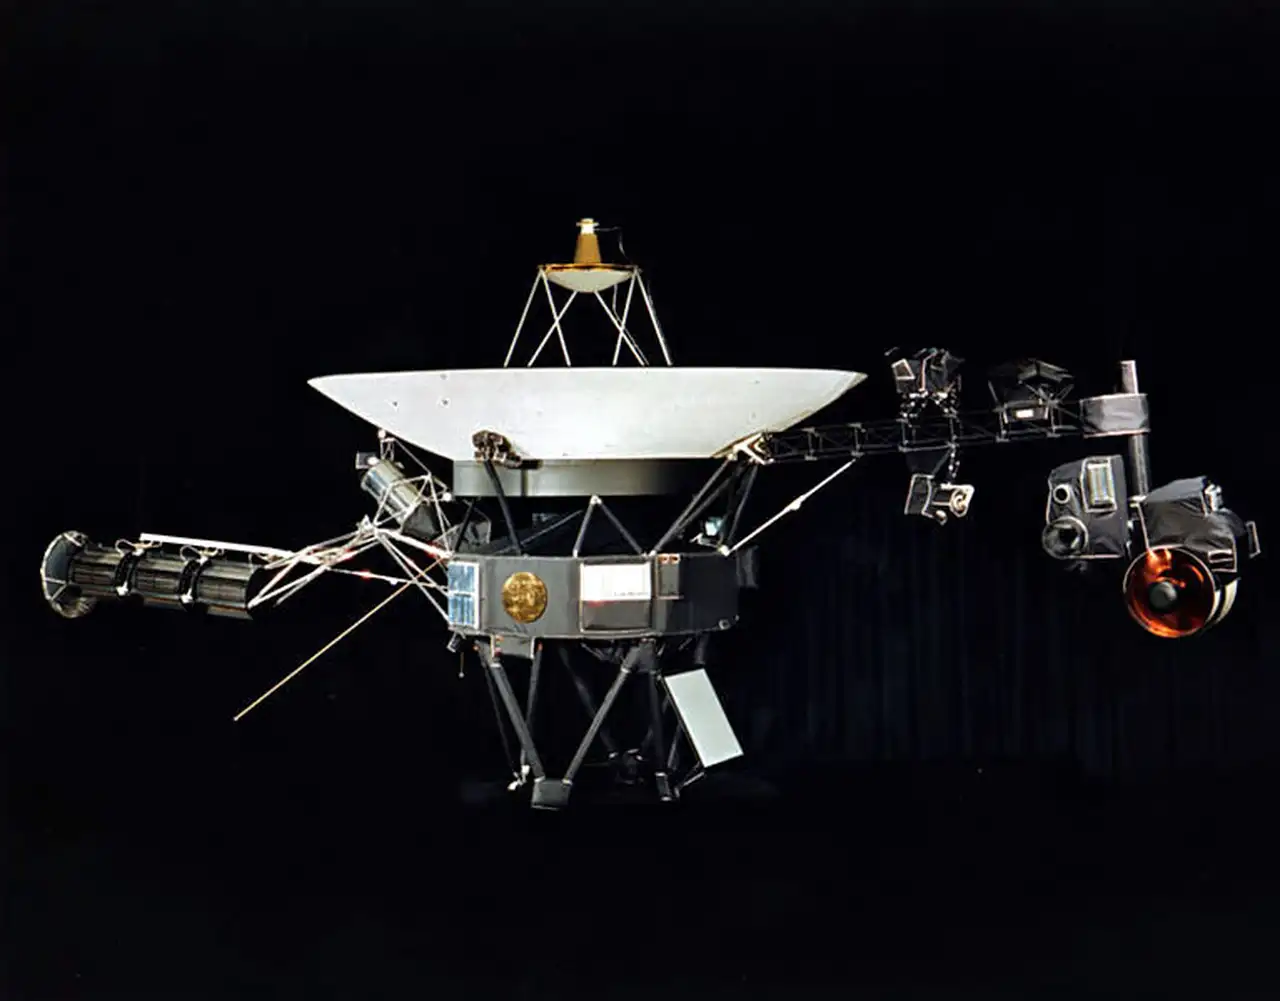 Újra küld adatokat a Földre öt hónap szünet után a Voyager 1